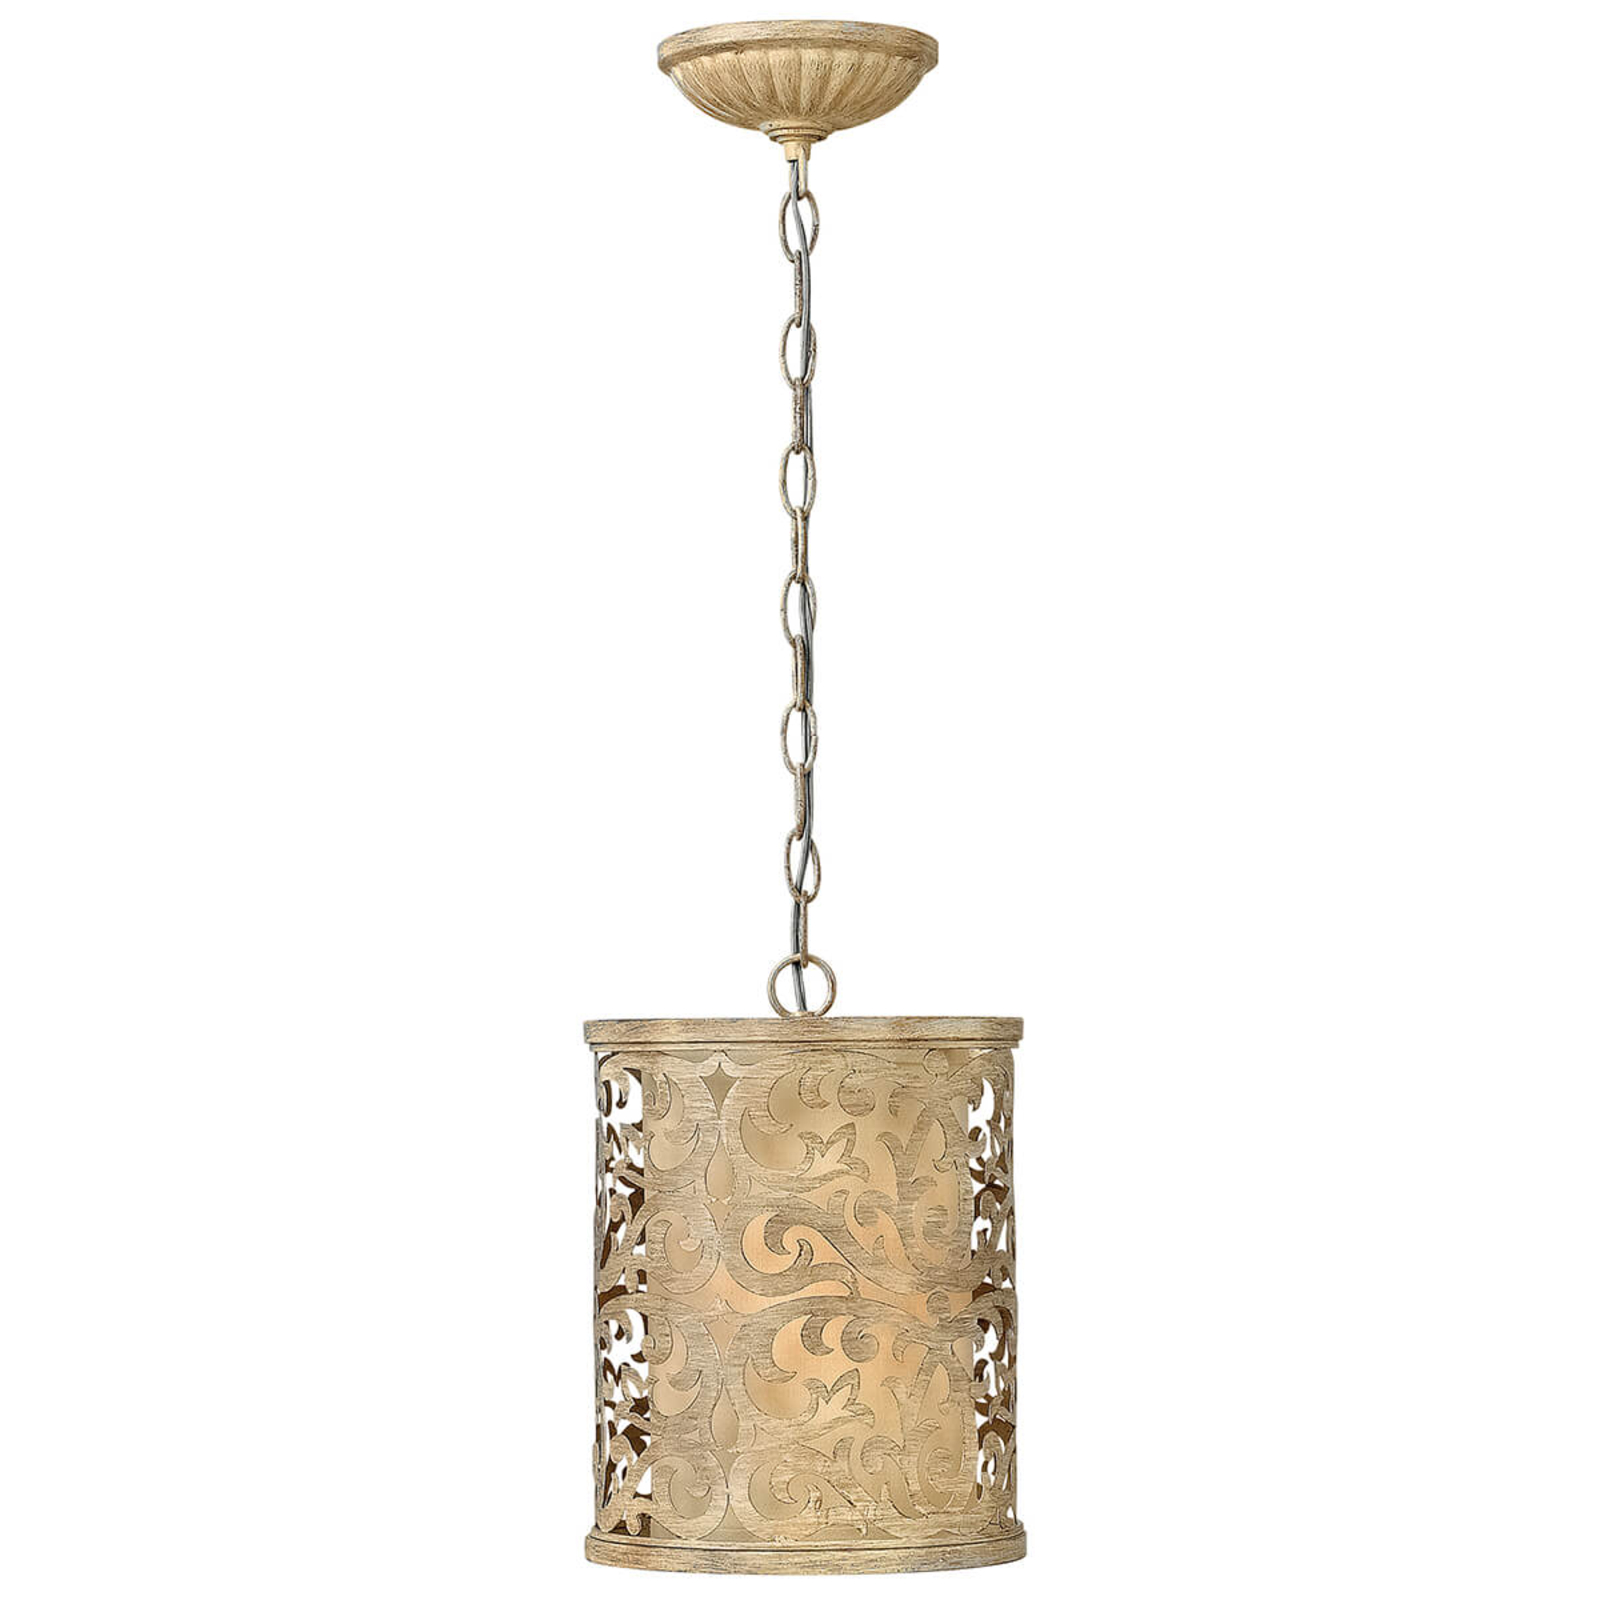 Carabel hængelampe, antikt design